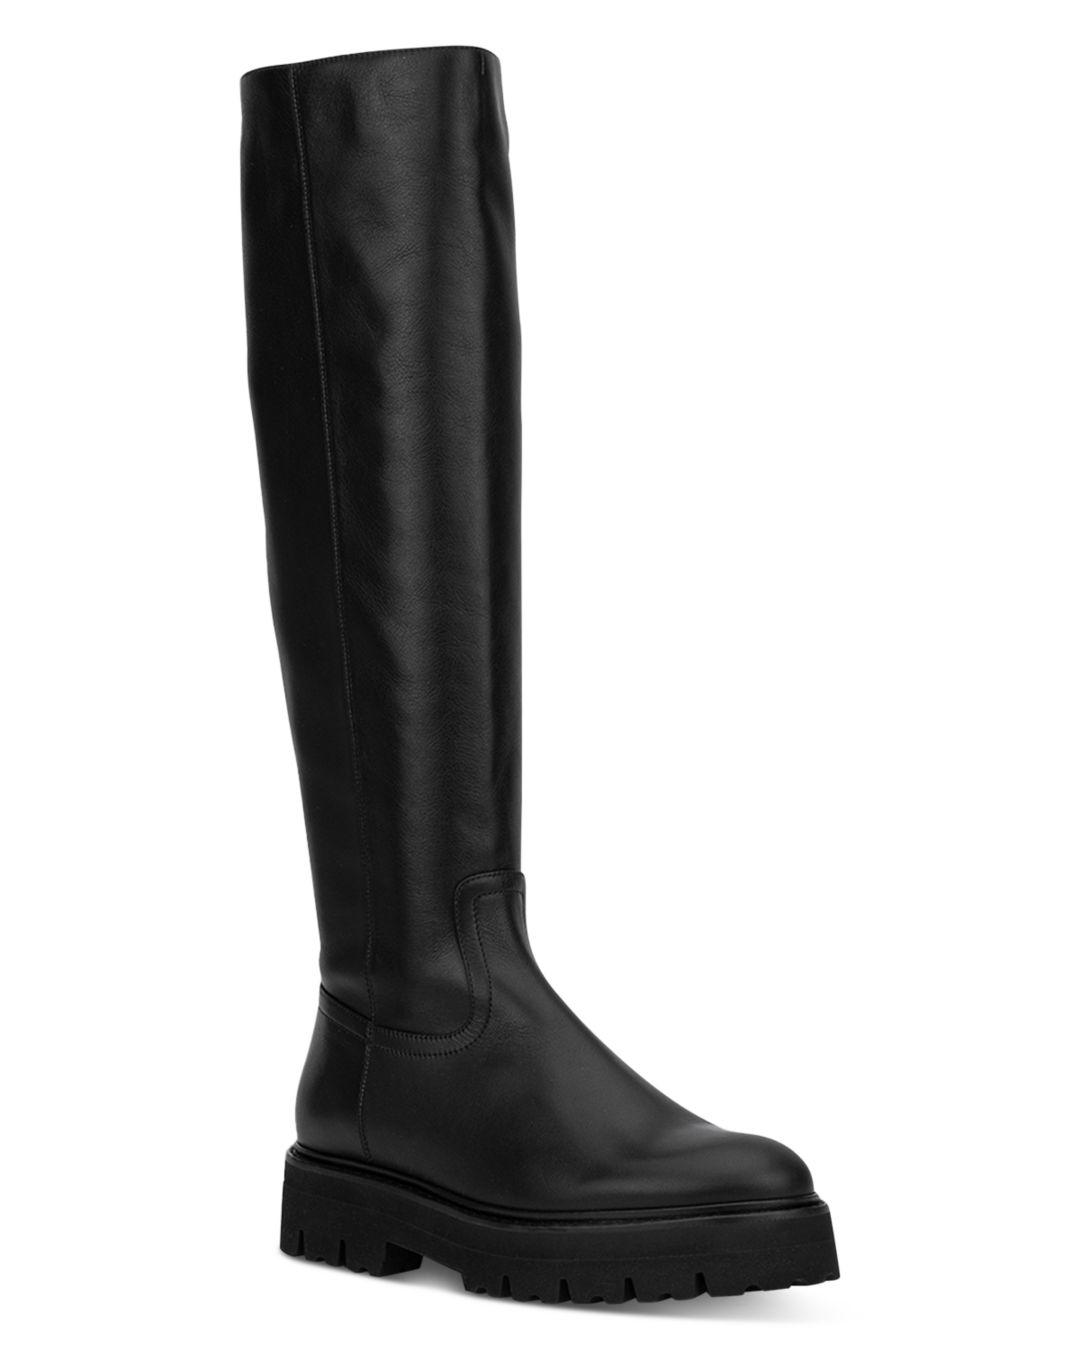 Aquatalia Sheya Tall Boots in Black | Lyst